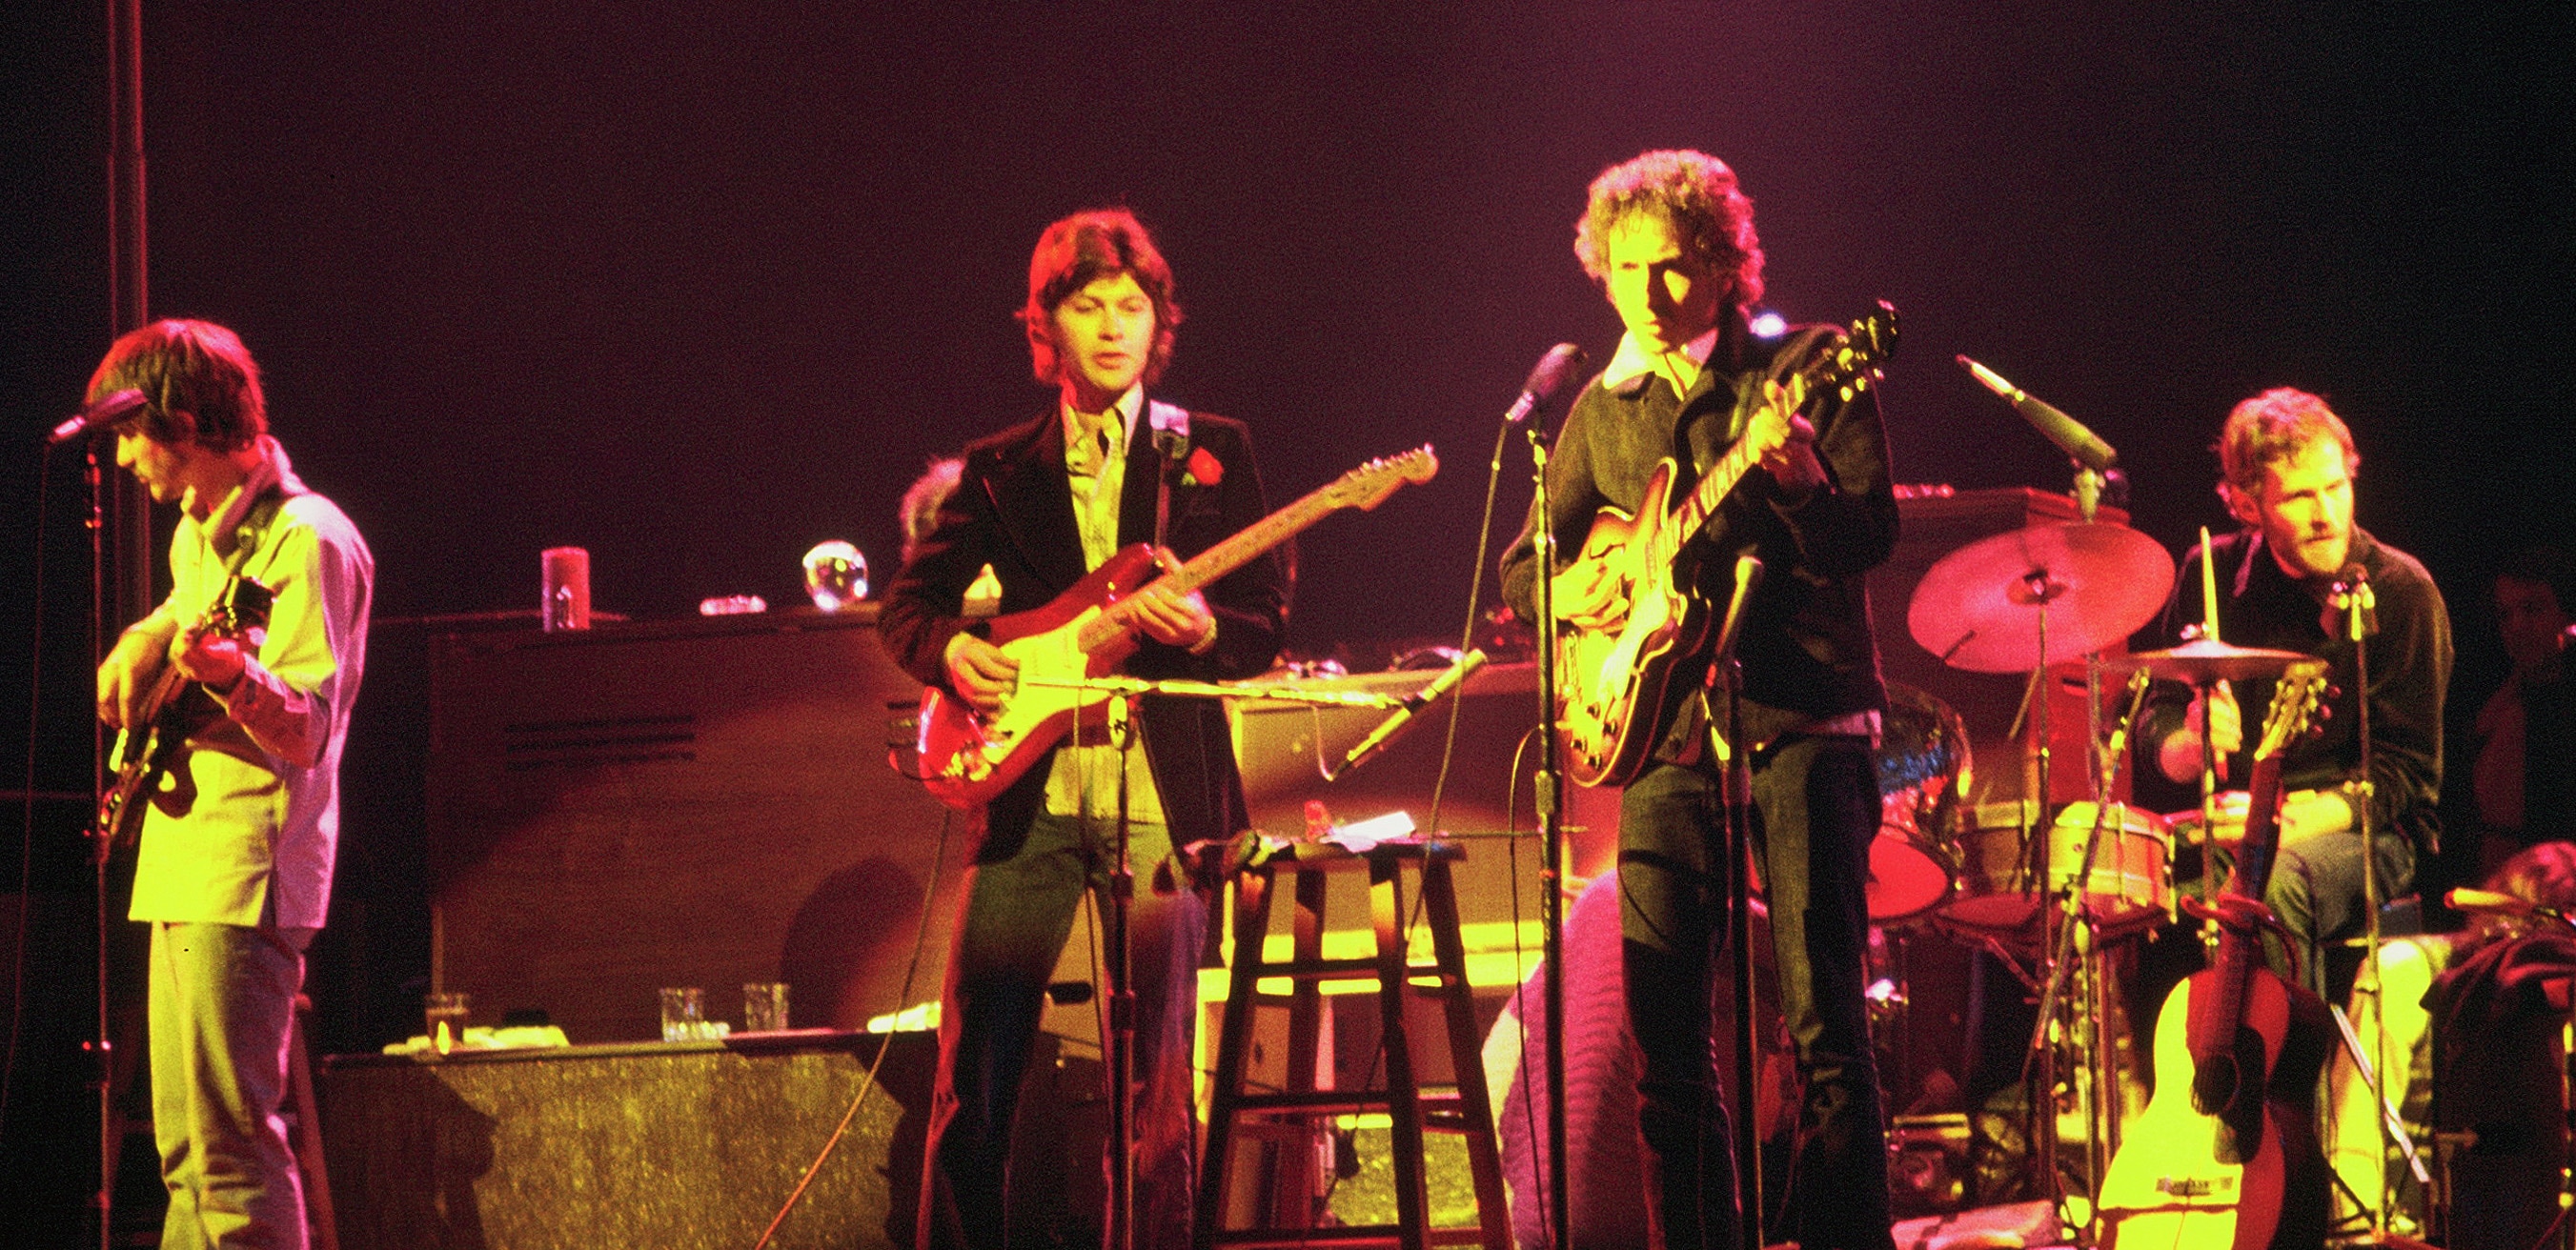 Quatre hommes se tiennent sur scène, habillés dans des vêtements des années 1970. L’un tient une guitare et se tient devant un micro. À sa gauche, deux hommes jouent de la guitare. À l’extrême droite, un homme joue de la batterie.